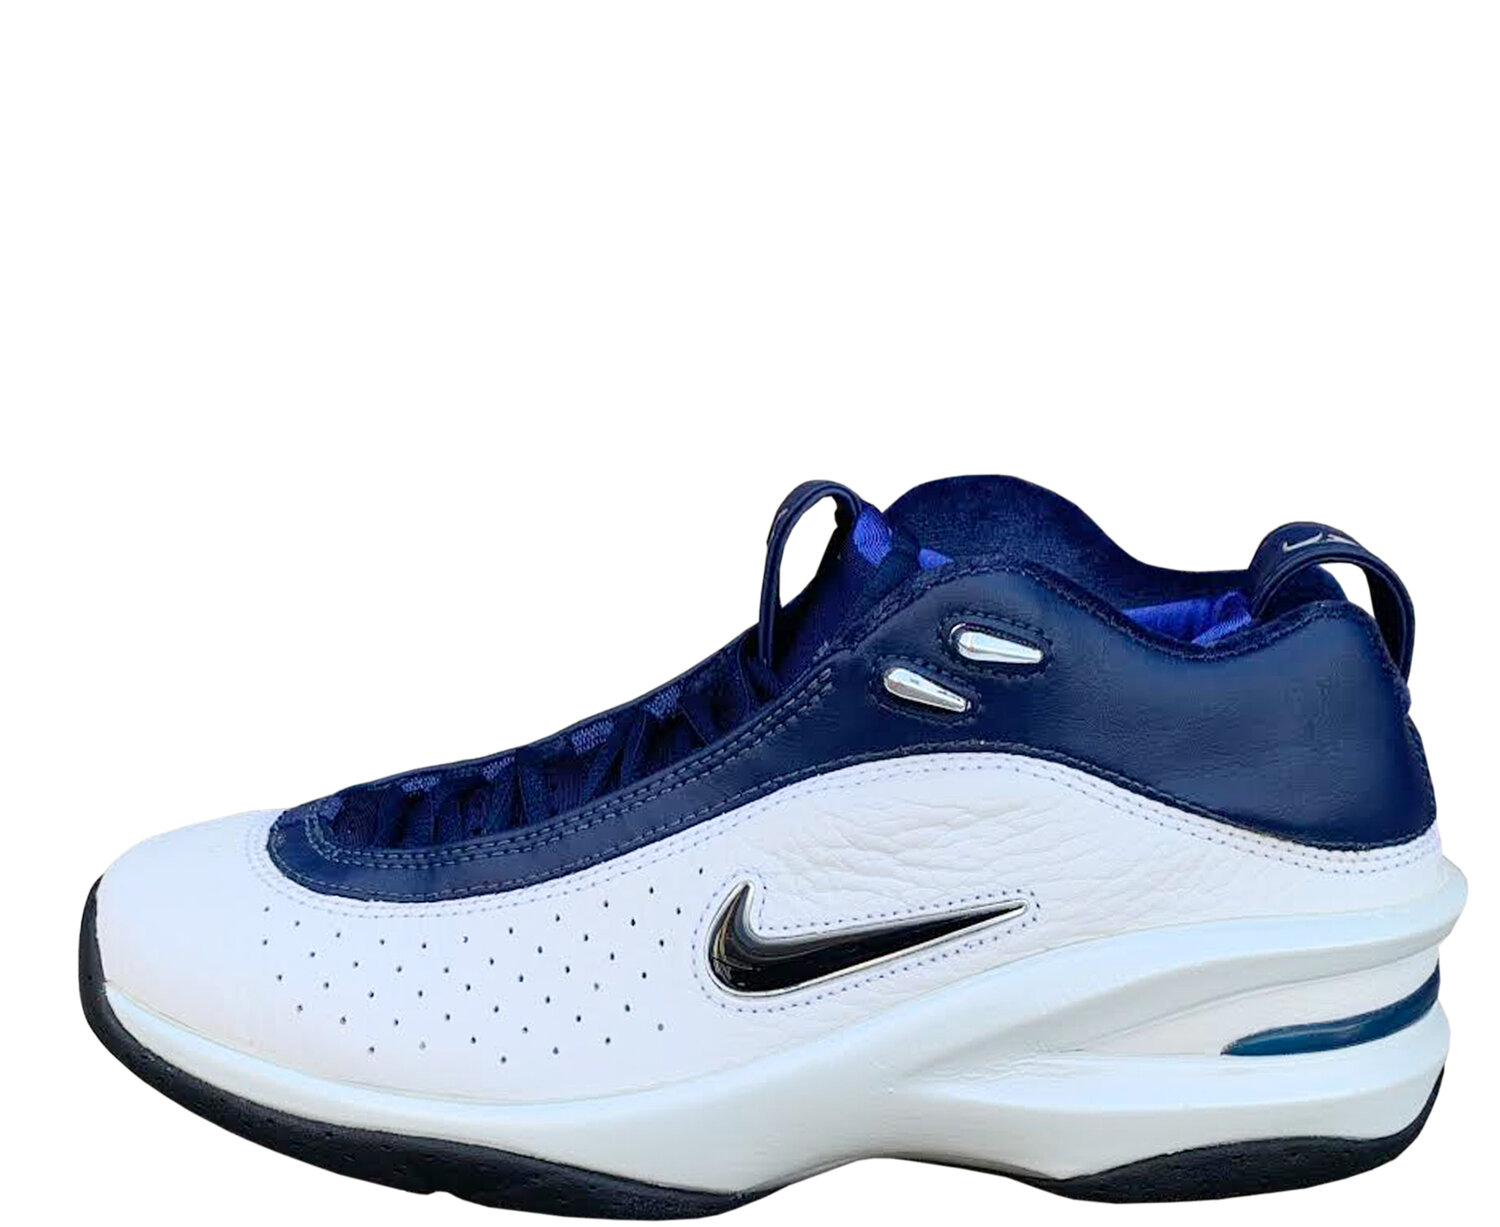 Scottie Piiiiiiiiiiiiiiipen! Nike Air Zoom Pippen Original 1998 White Blue